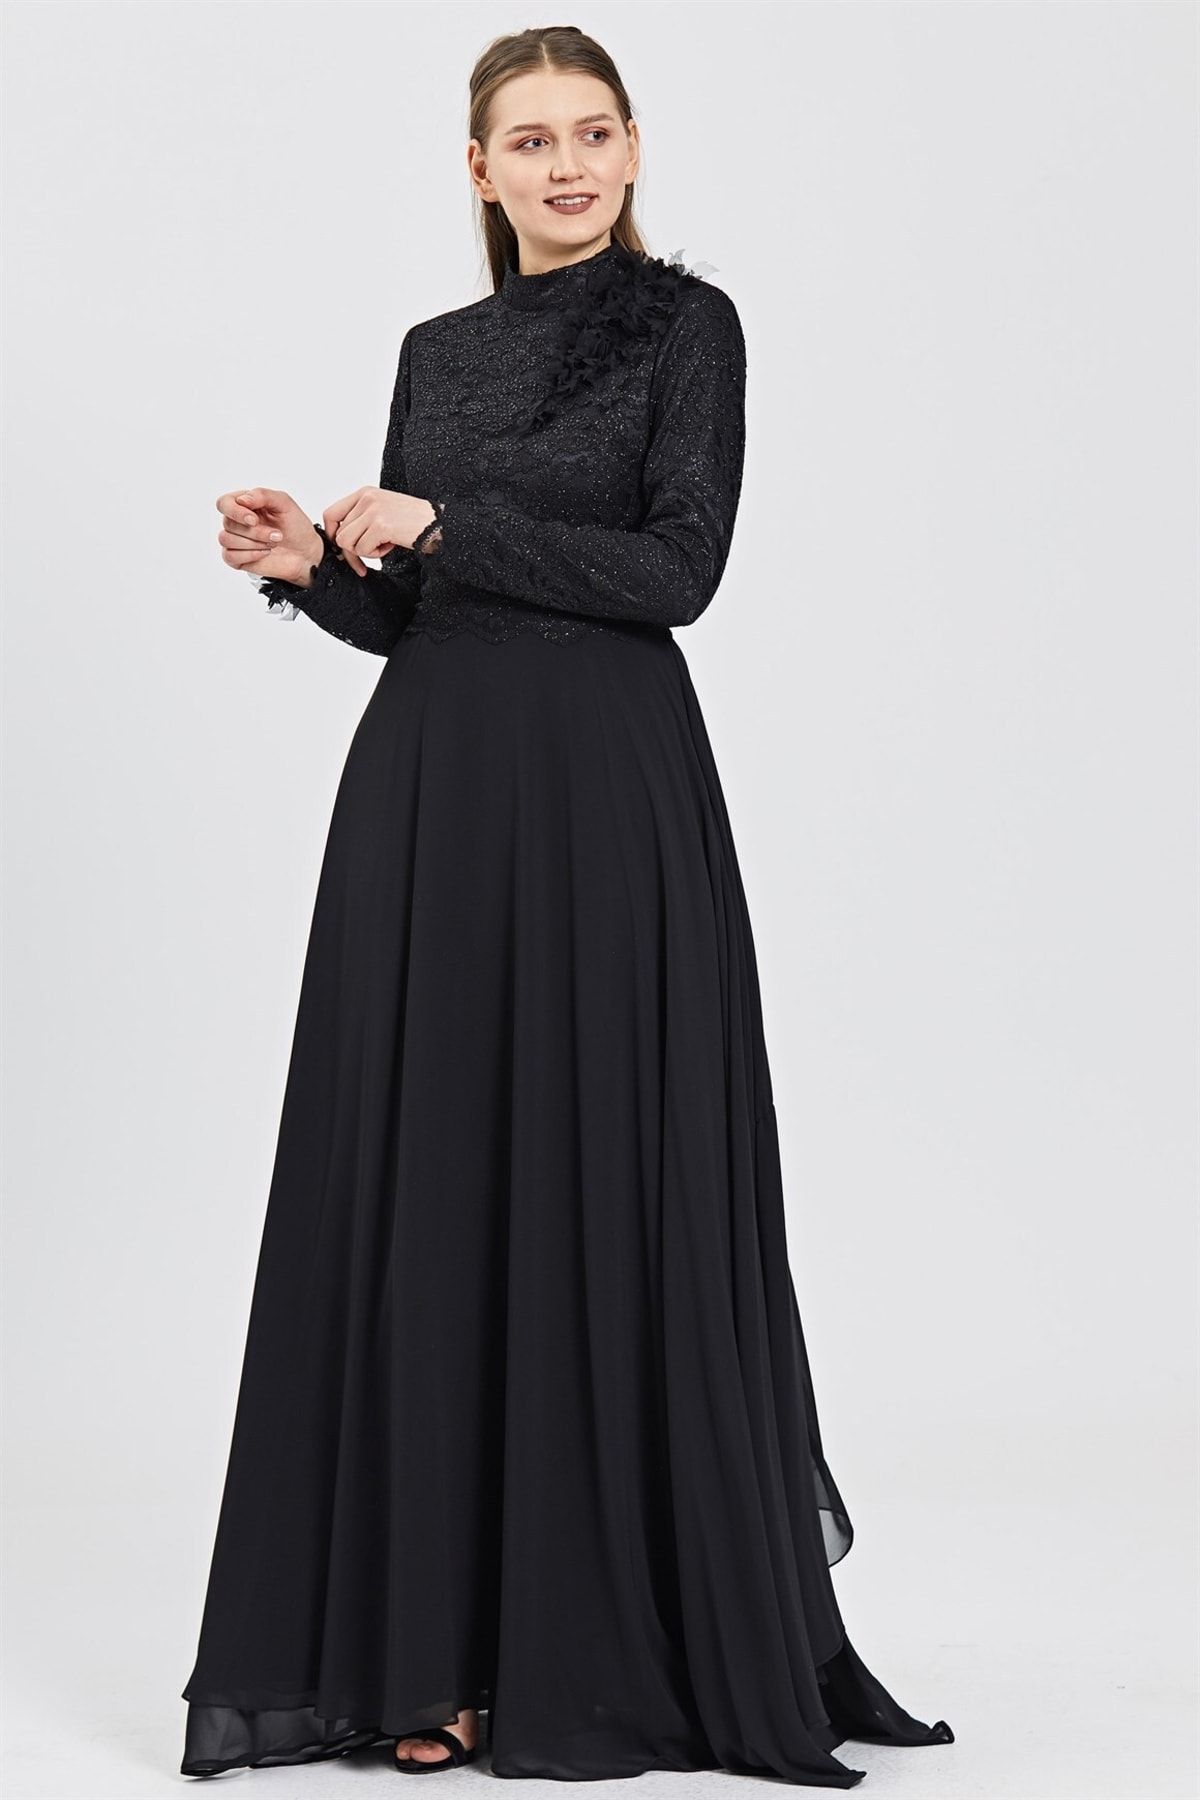 Esswaap Siyah Üst Beden Dantel, Çiçek Ve Yaprak Aksesuarlı Şifon Etekli Abiye Elbise